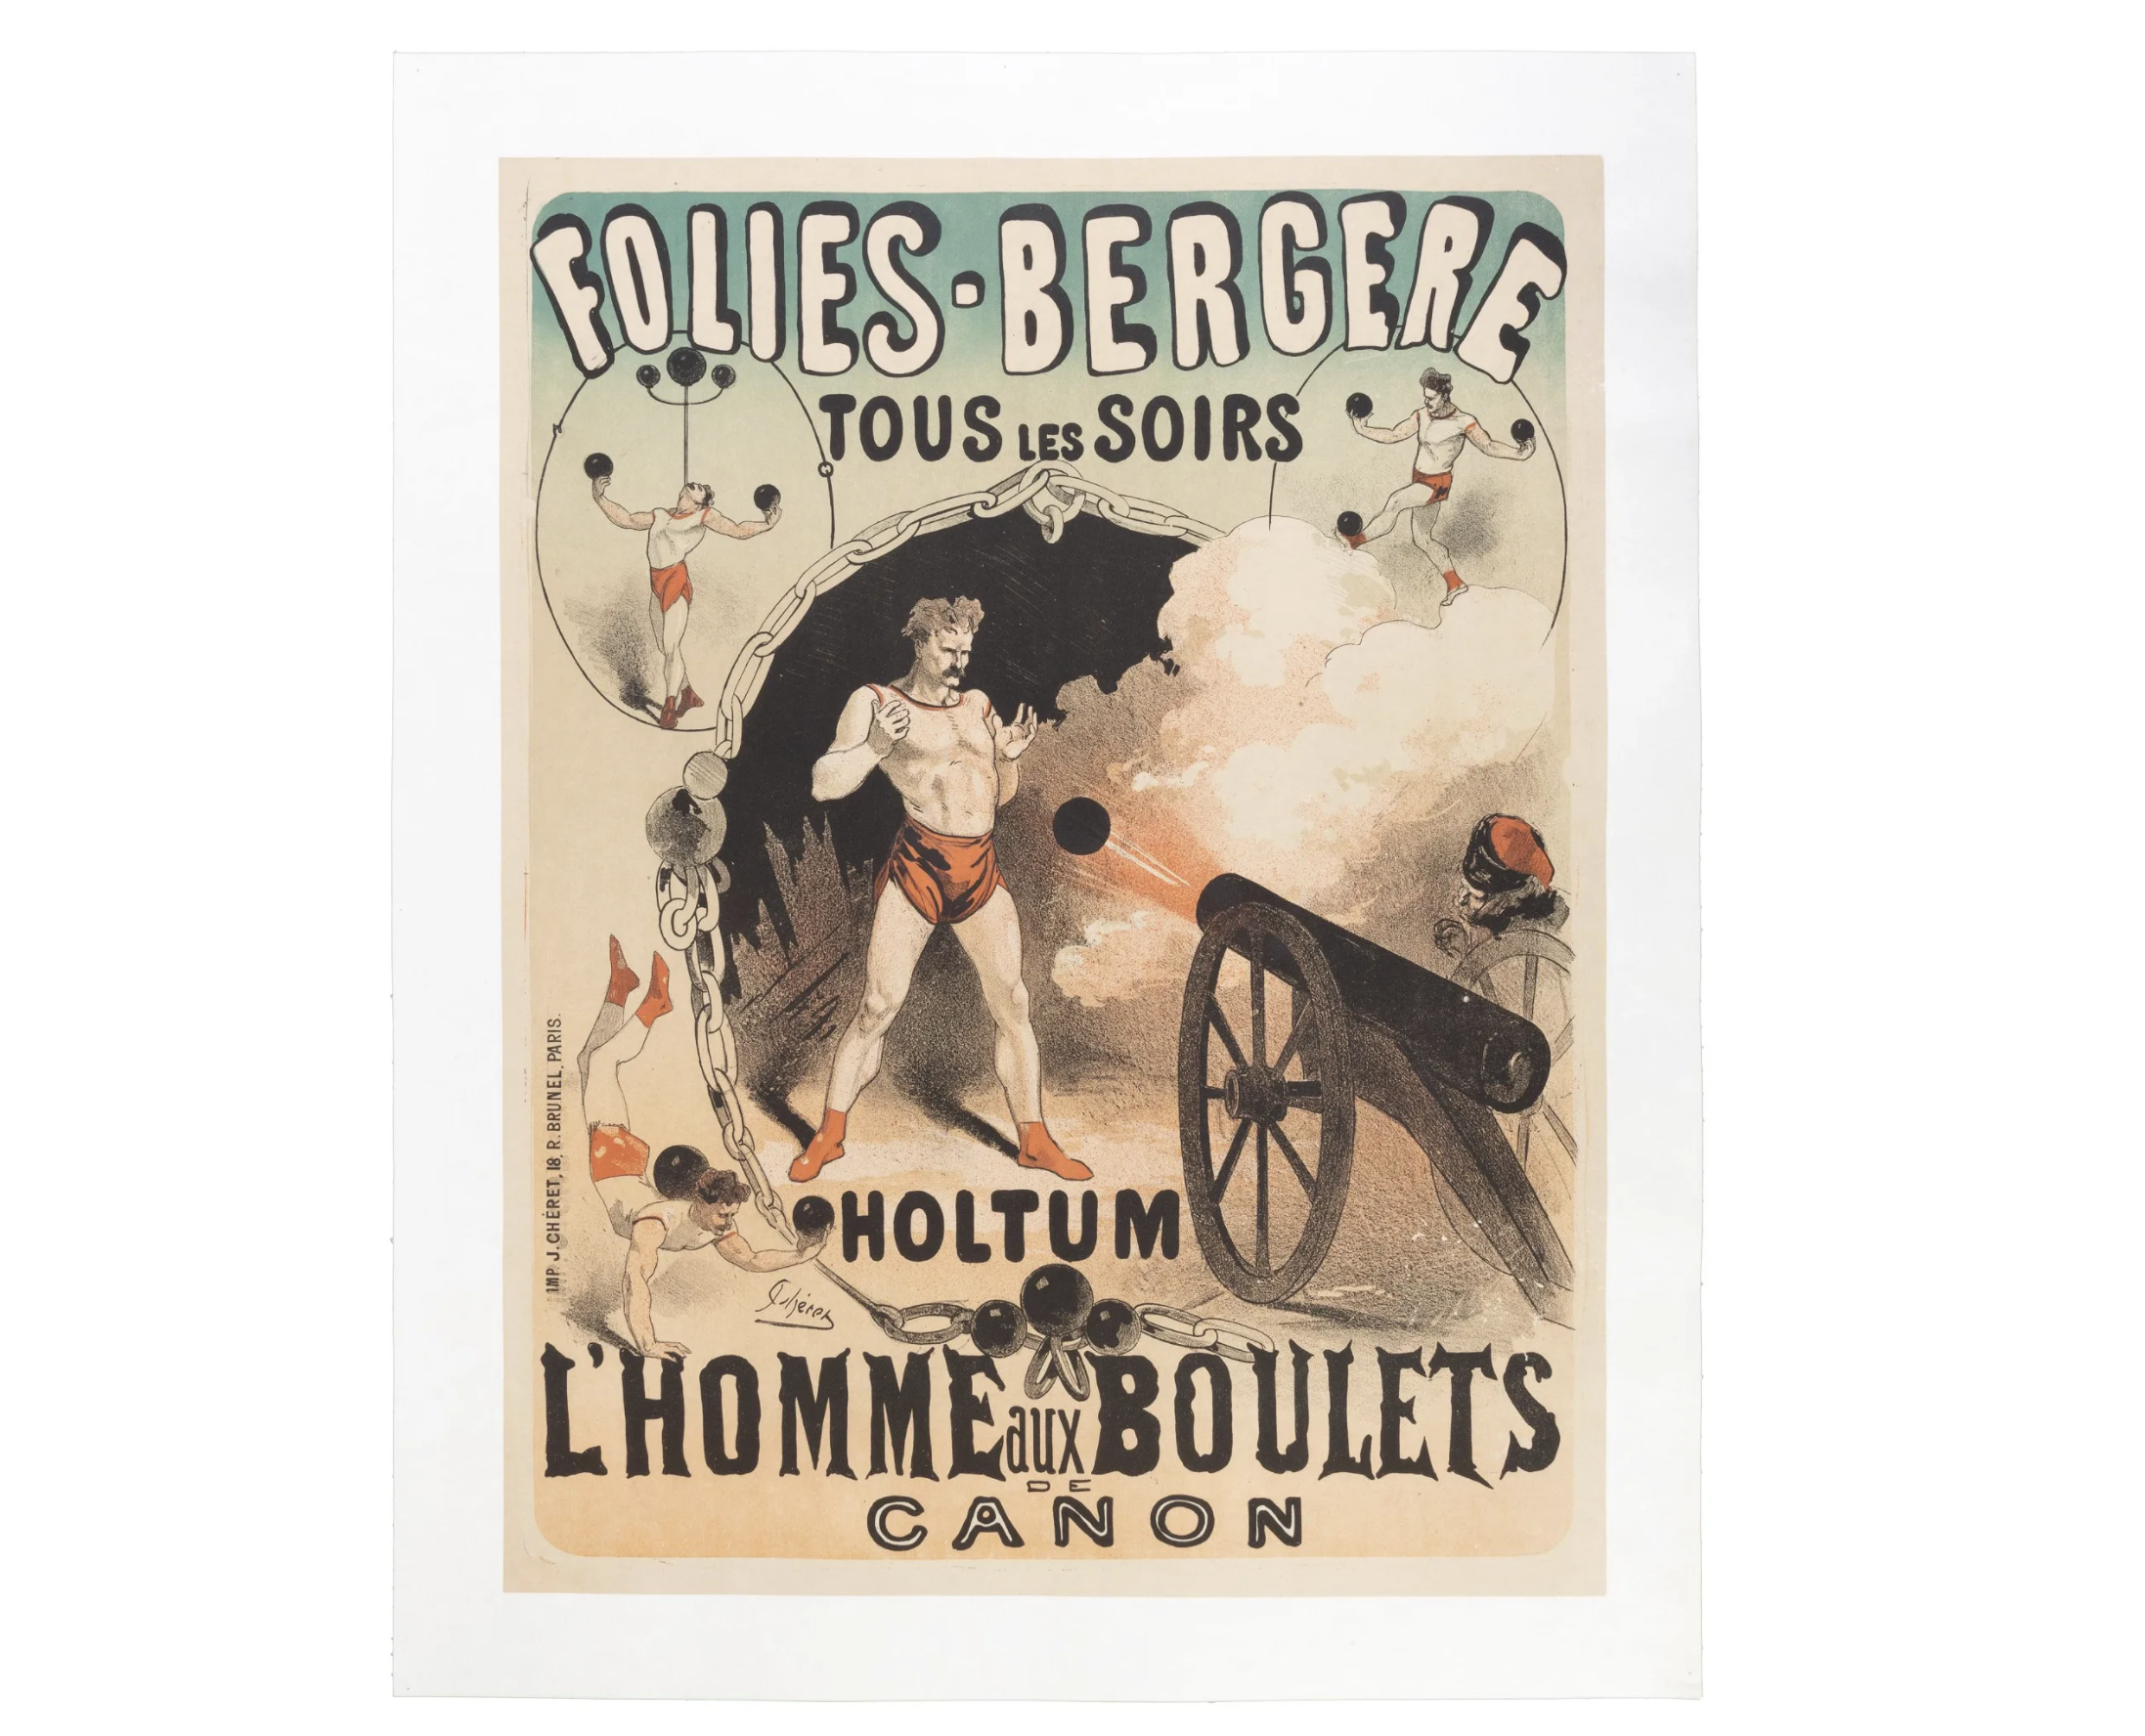 Folies-Bergere Tous les Soirs Holtum l'Homme aux Boulets de Canon poster by Jules Cheret, est. $3,000-$5,000